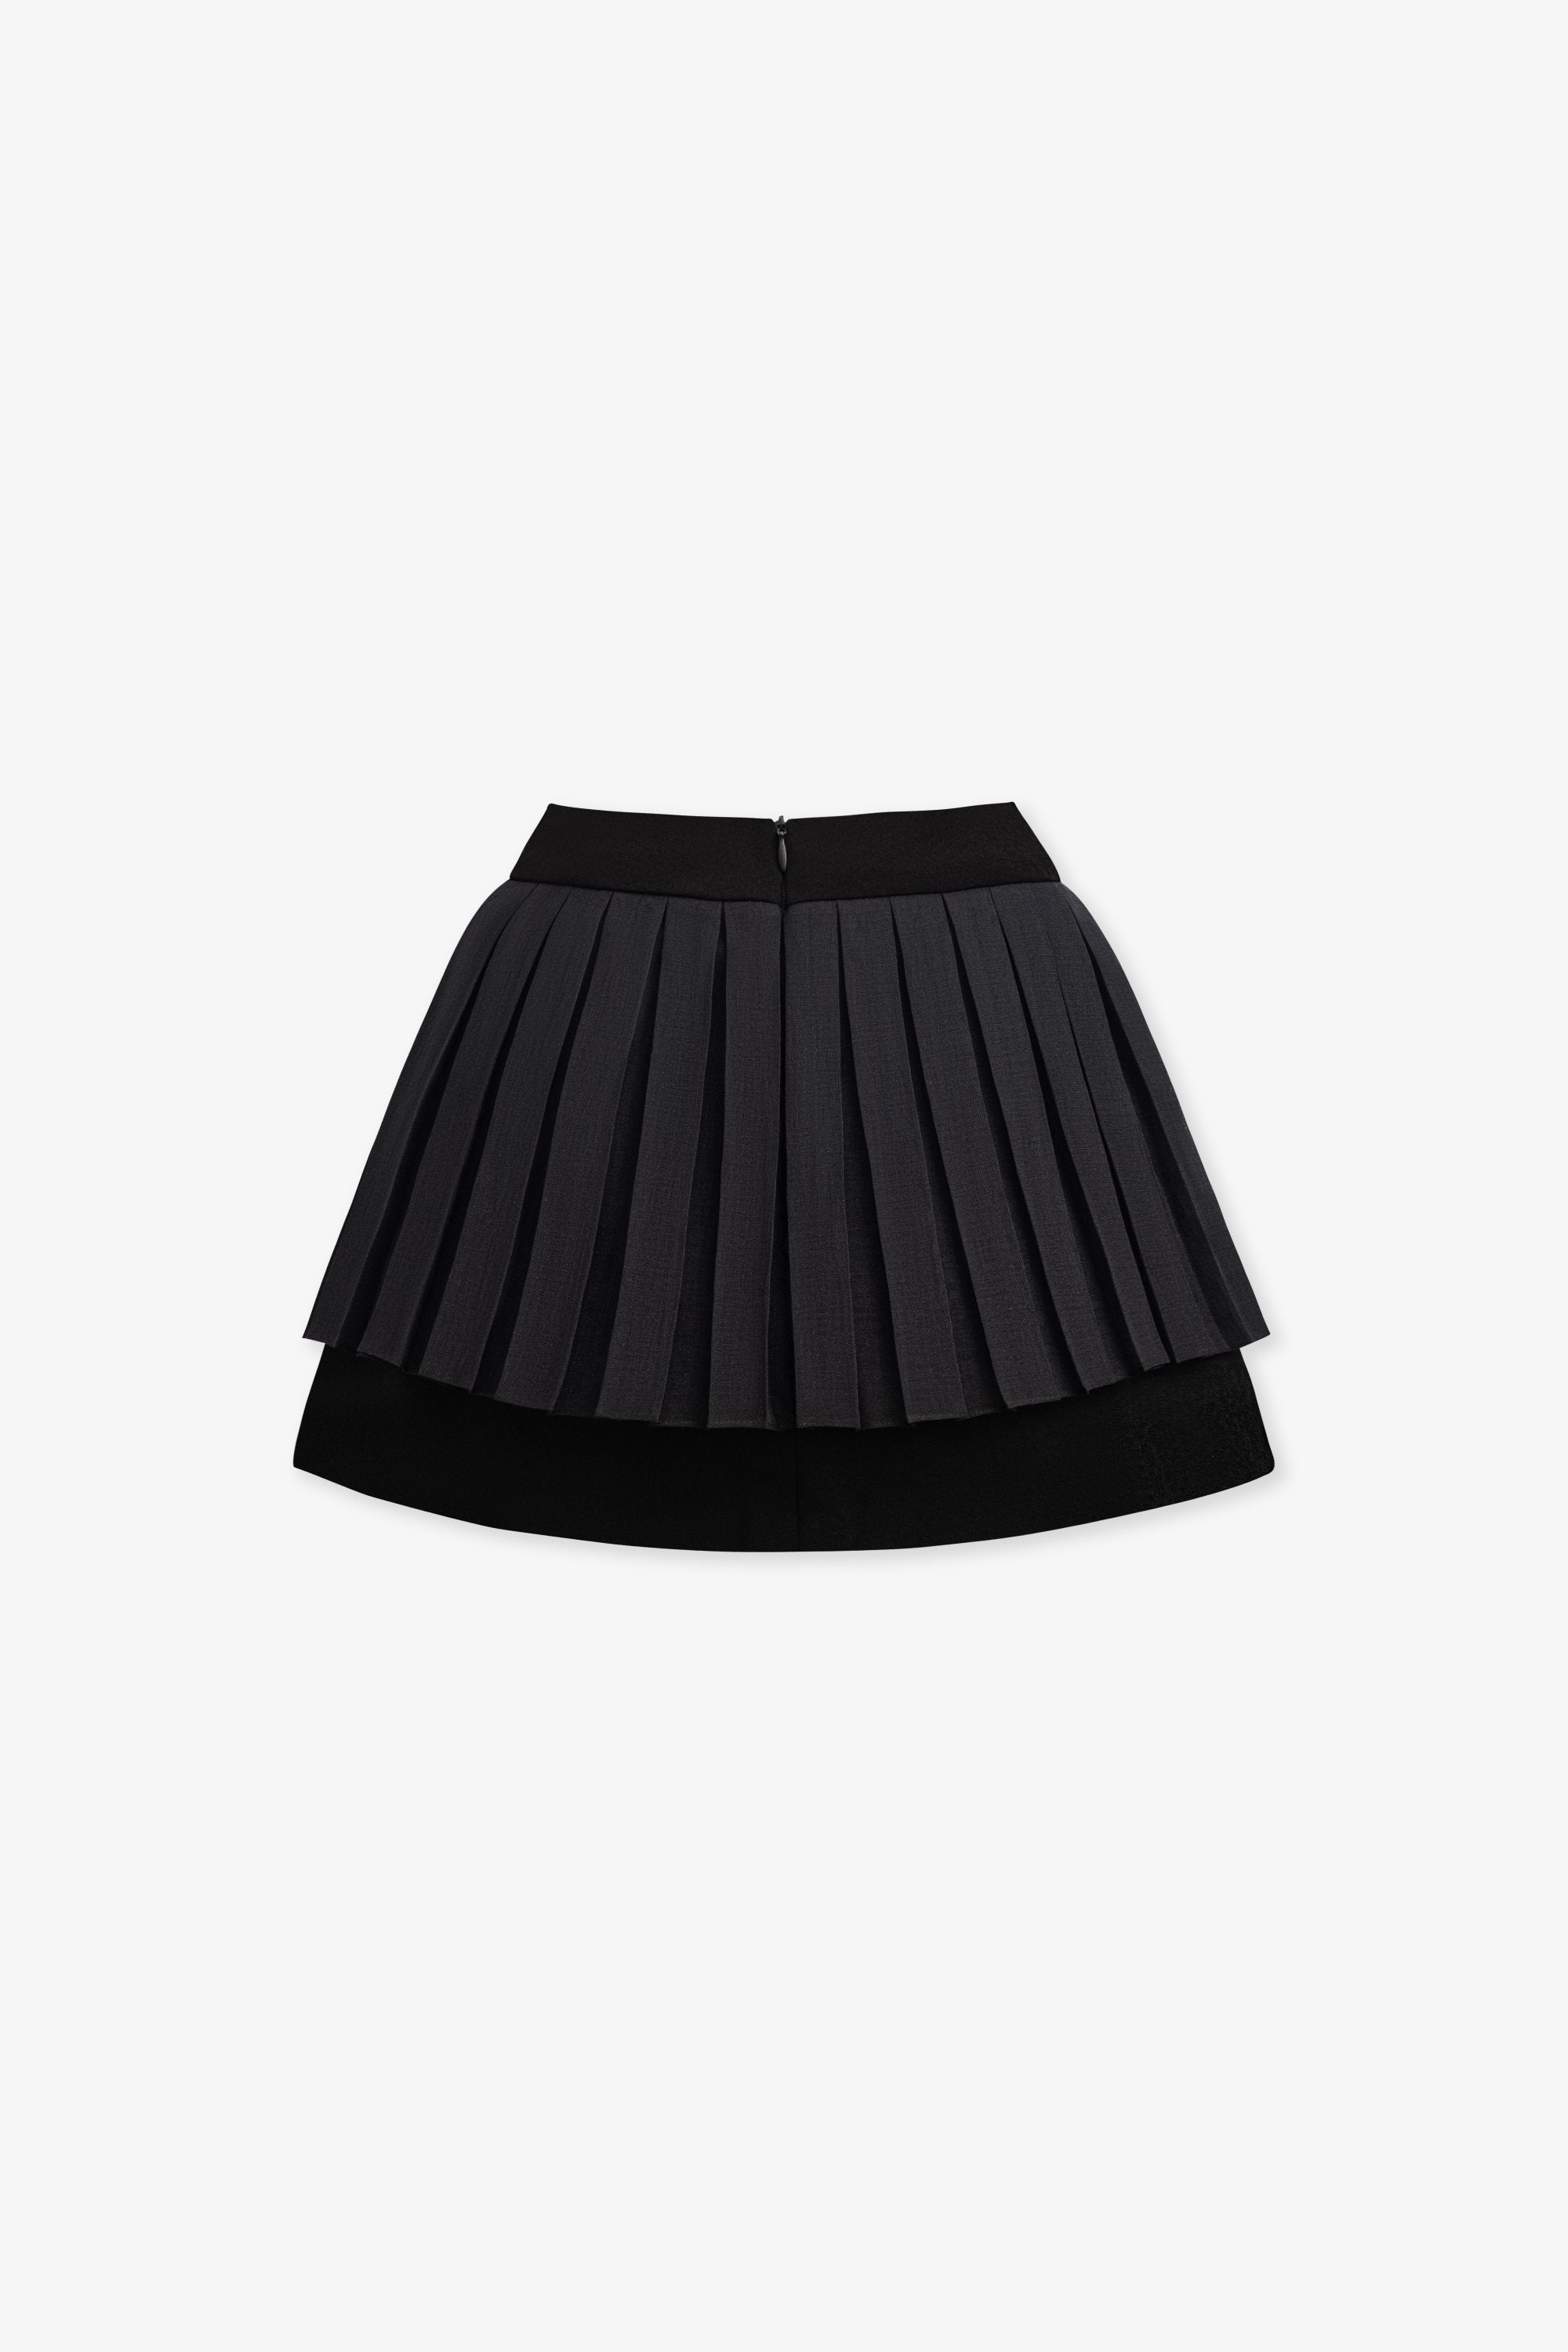 Laude Skirt